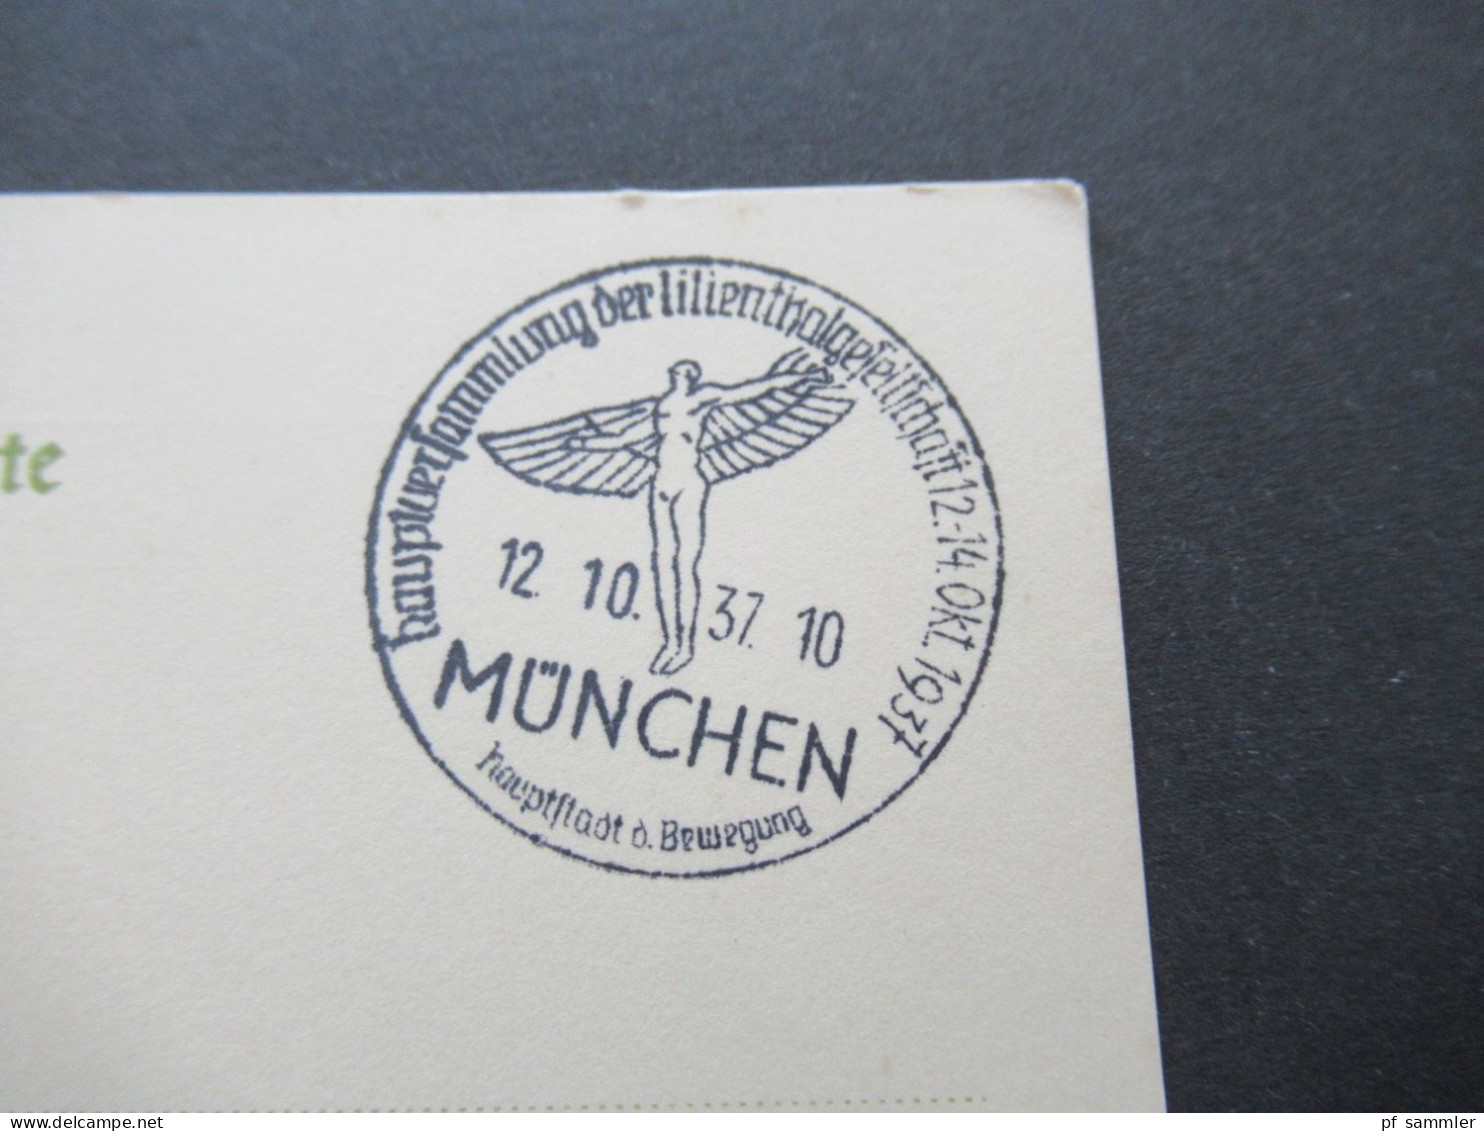 3.Reich 1937 / 1938 blanko PK mit Hindenburg Frankatur insgesamt 50 Stück verschiedene Sonderstempel! Propaganda Stempel